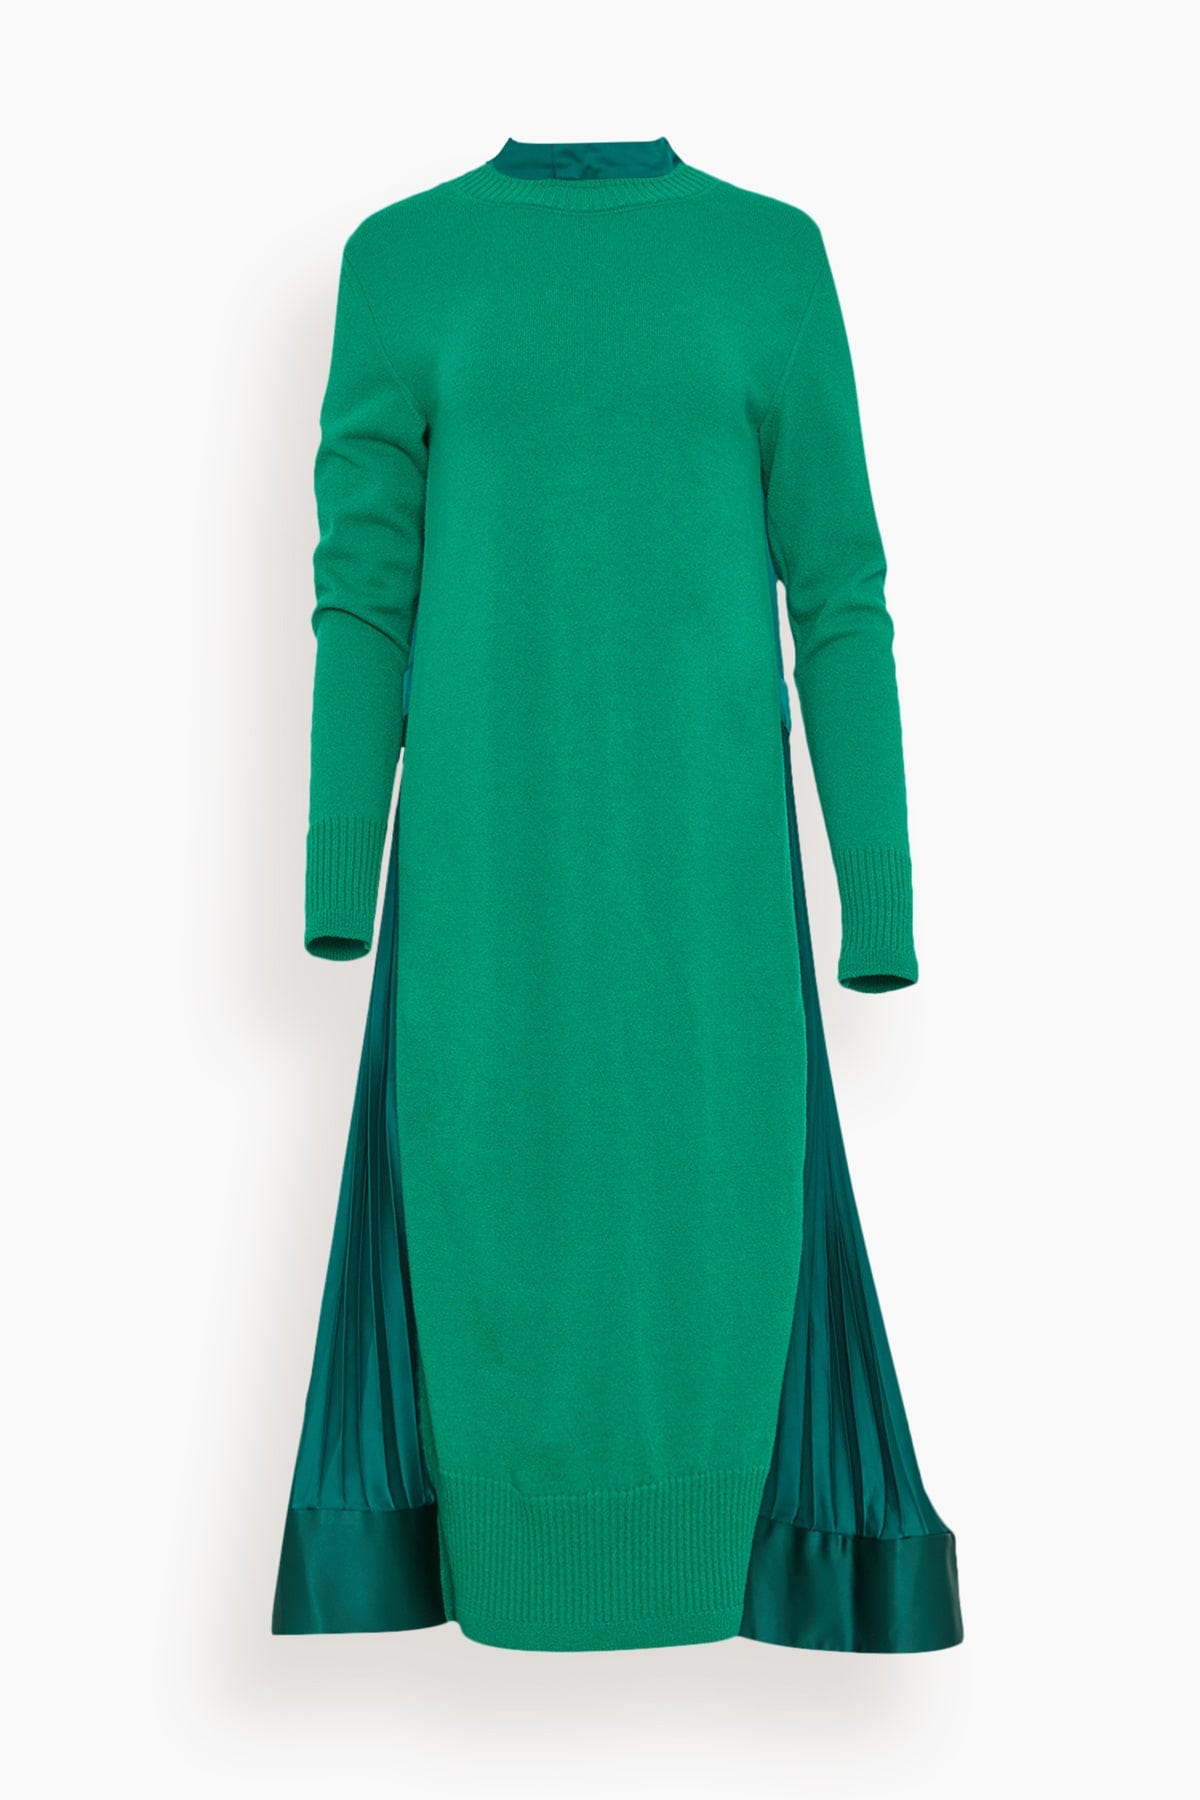 Sacai Dresses Wool Knit Dress in Green